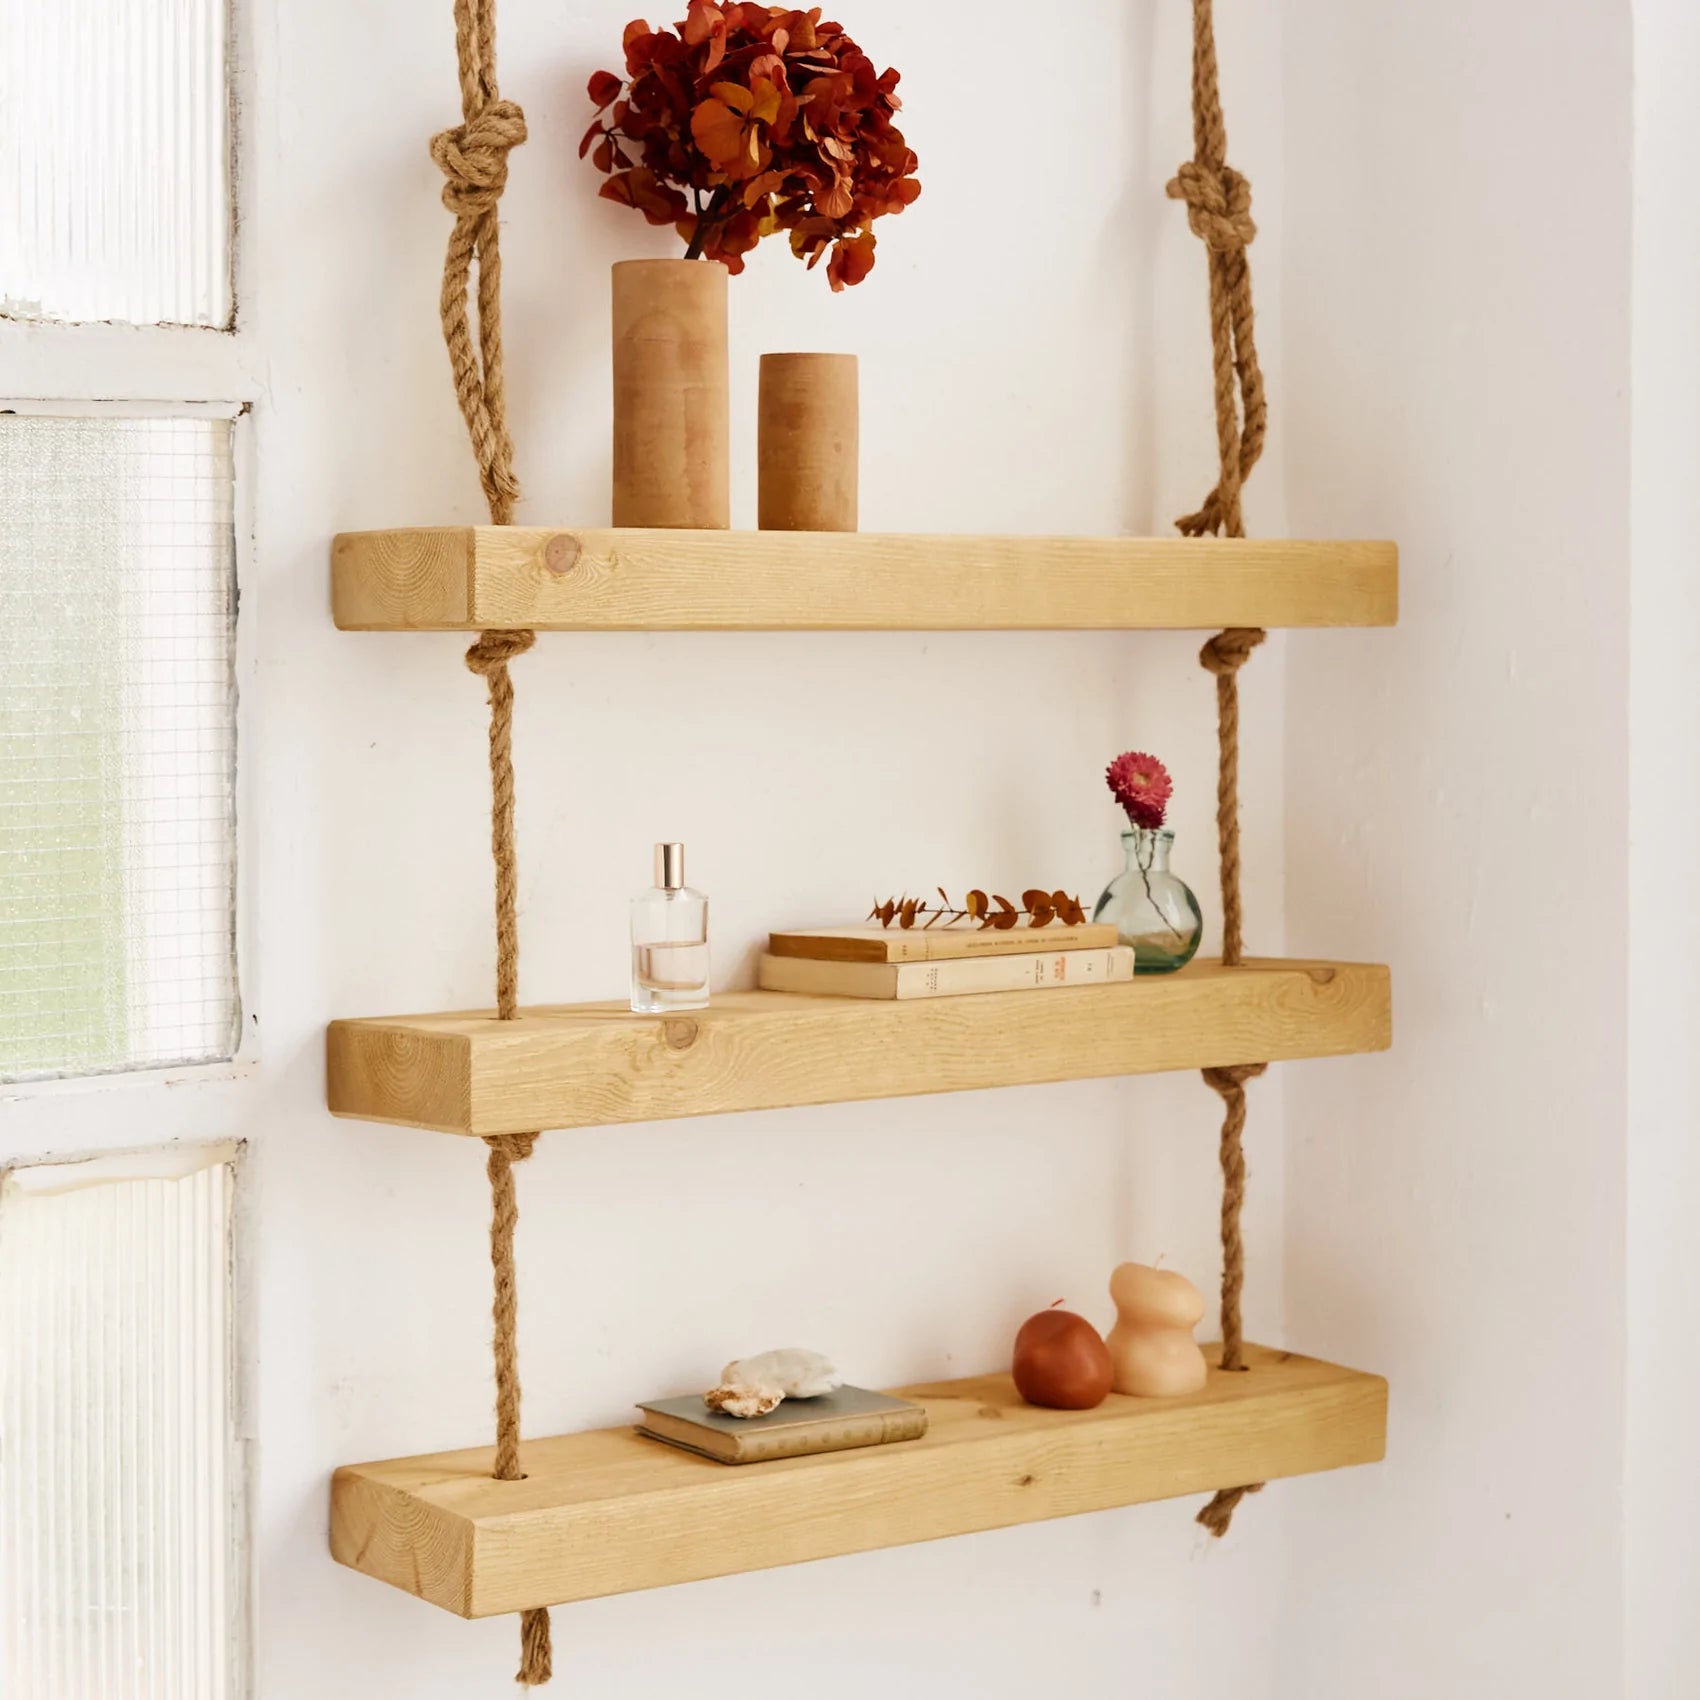 44 ideas de Cómodas de madera  comodas de madera, decoración de unas,  muebles comodas